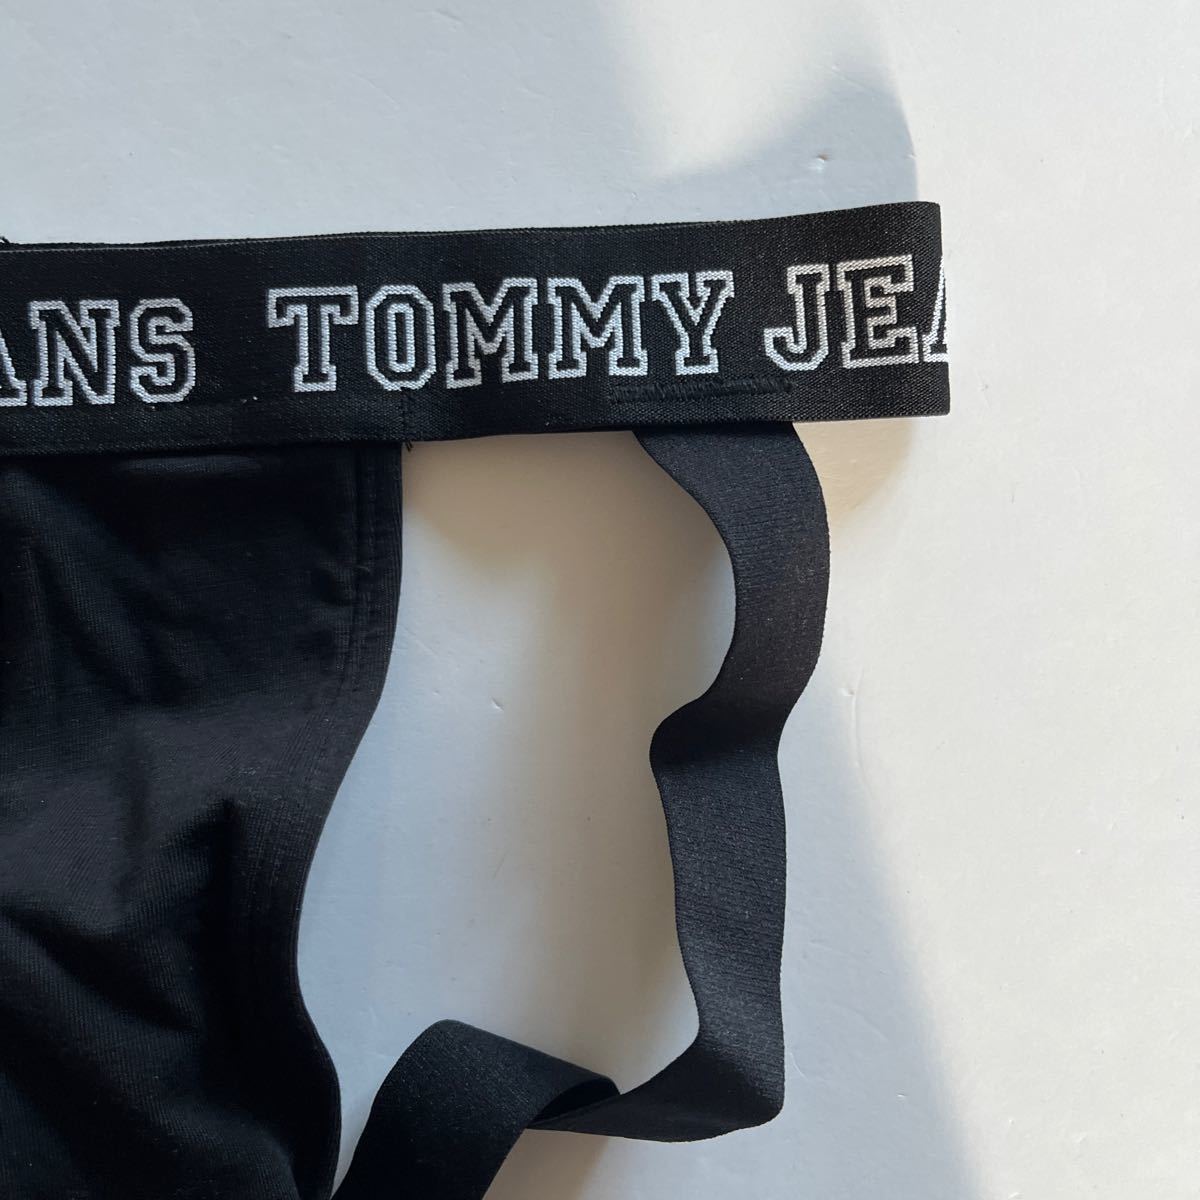 TOMMY JEANS トミージーンズ メンズジョグストラップ SM-M(S)ブラック 黒 スポーツインナー メンズインナーウエア ケツワレ 男性下着の画像2